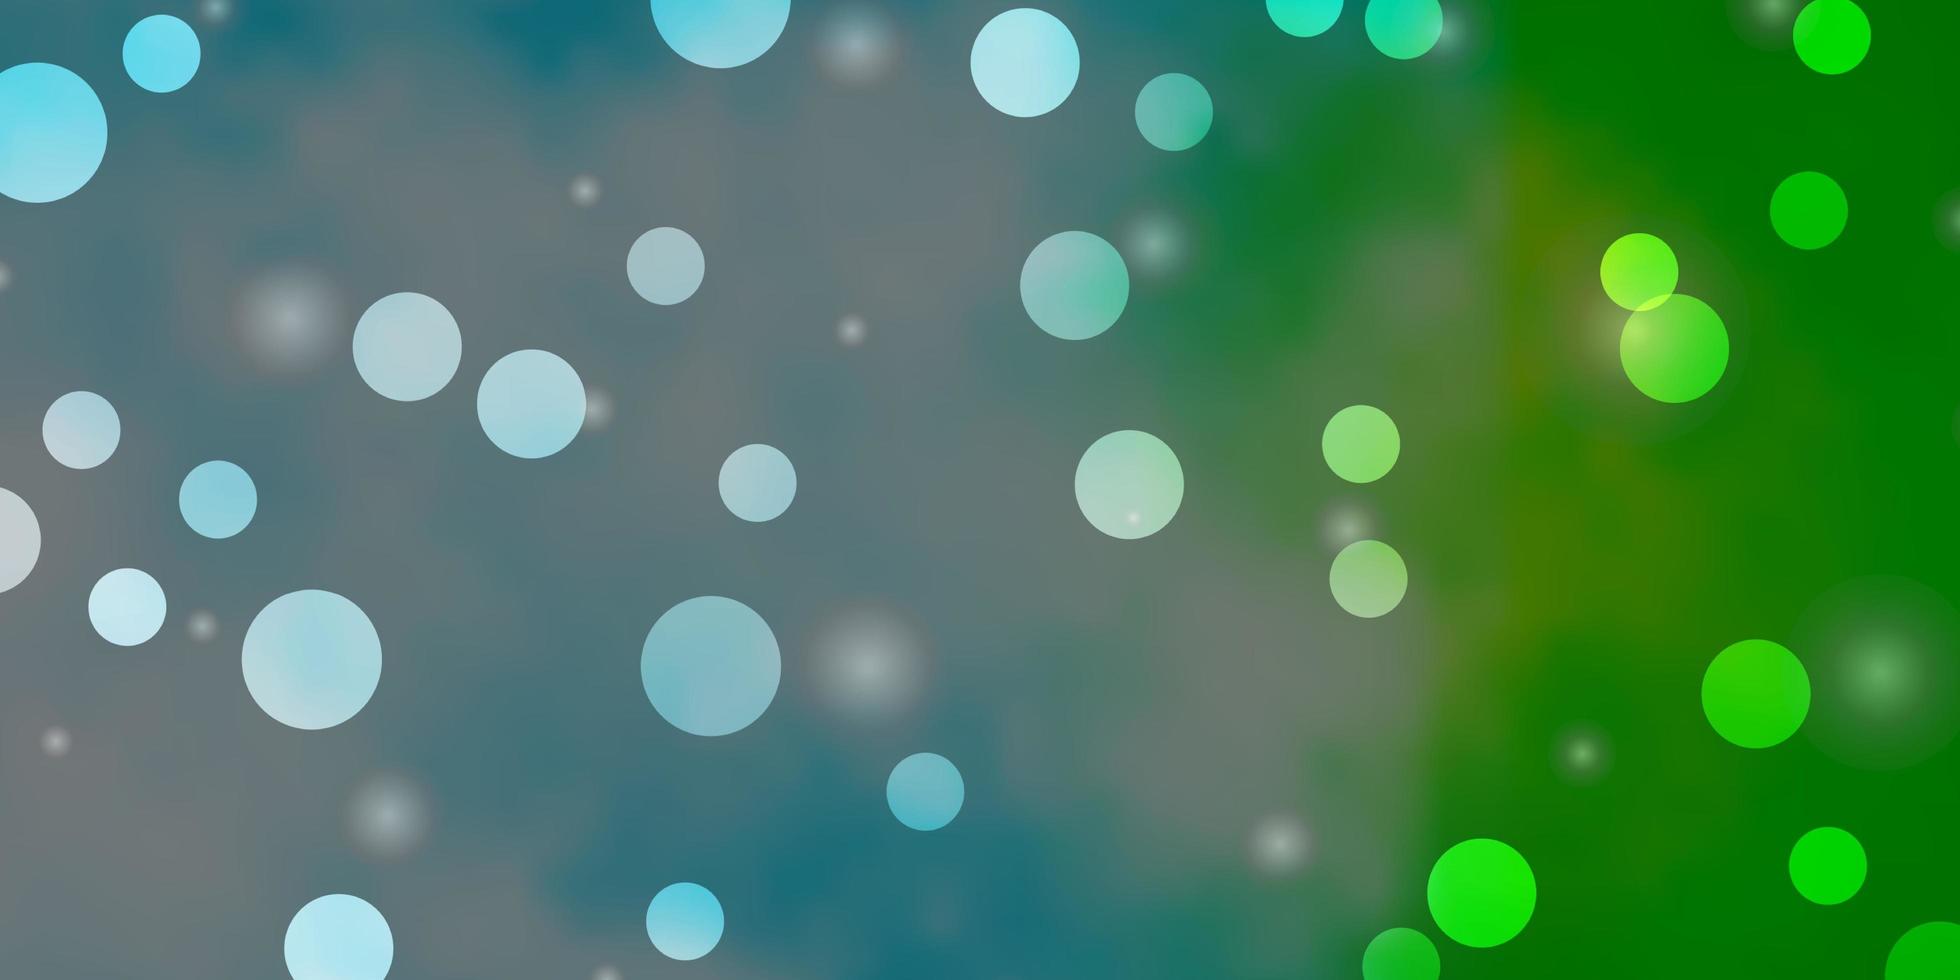 pano de fundo azul claro, verde do vetor com círculos, estrelas. ilustração com conjunto de esferas abstratas coloridas, estrelas. design para cartazes, banners.